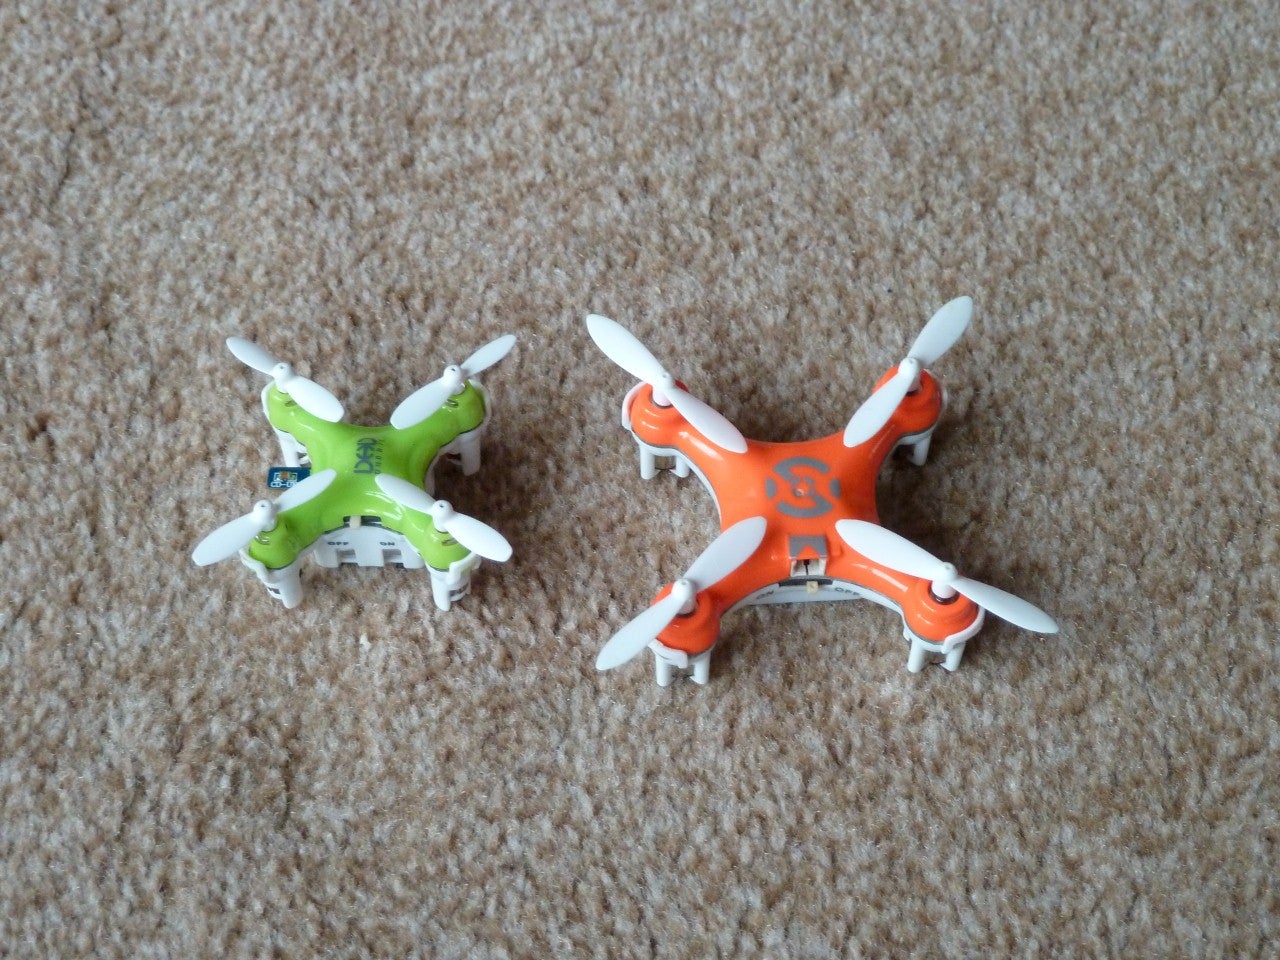 drone d1 ultra mini quadcopter